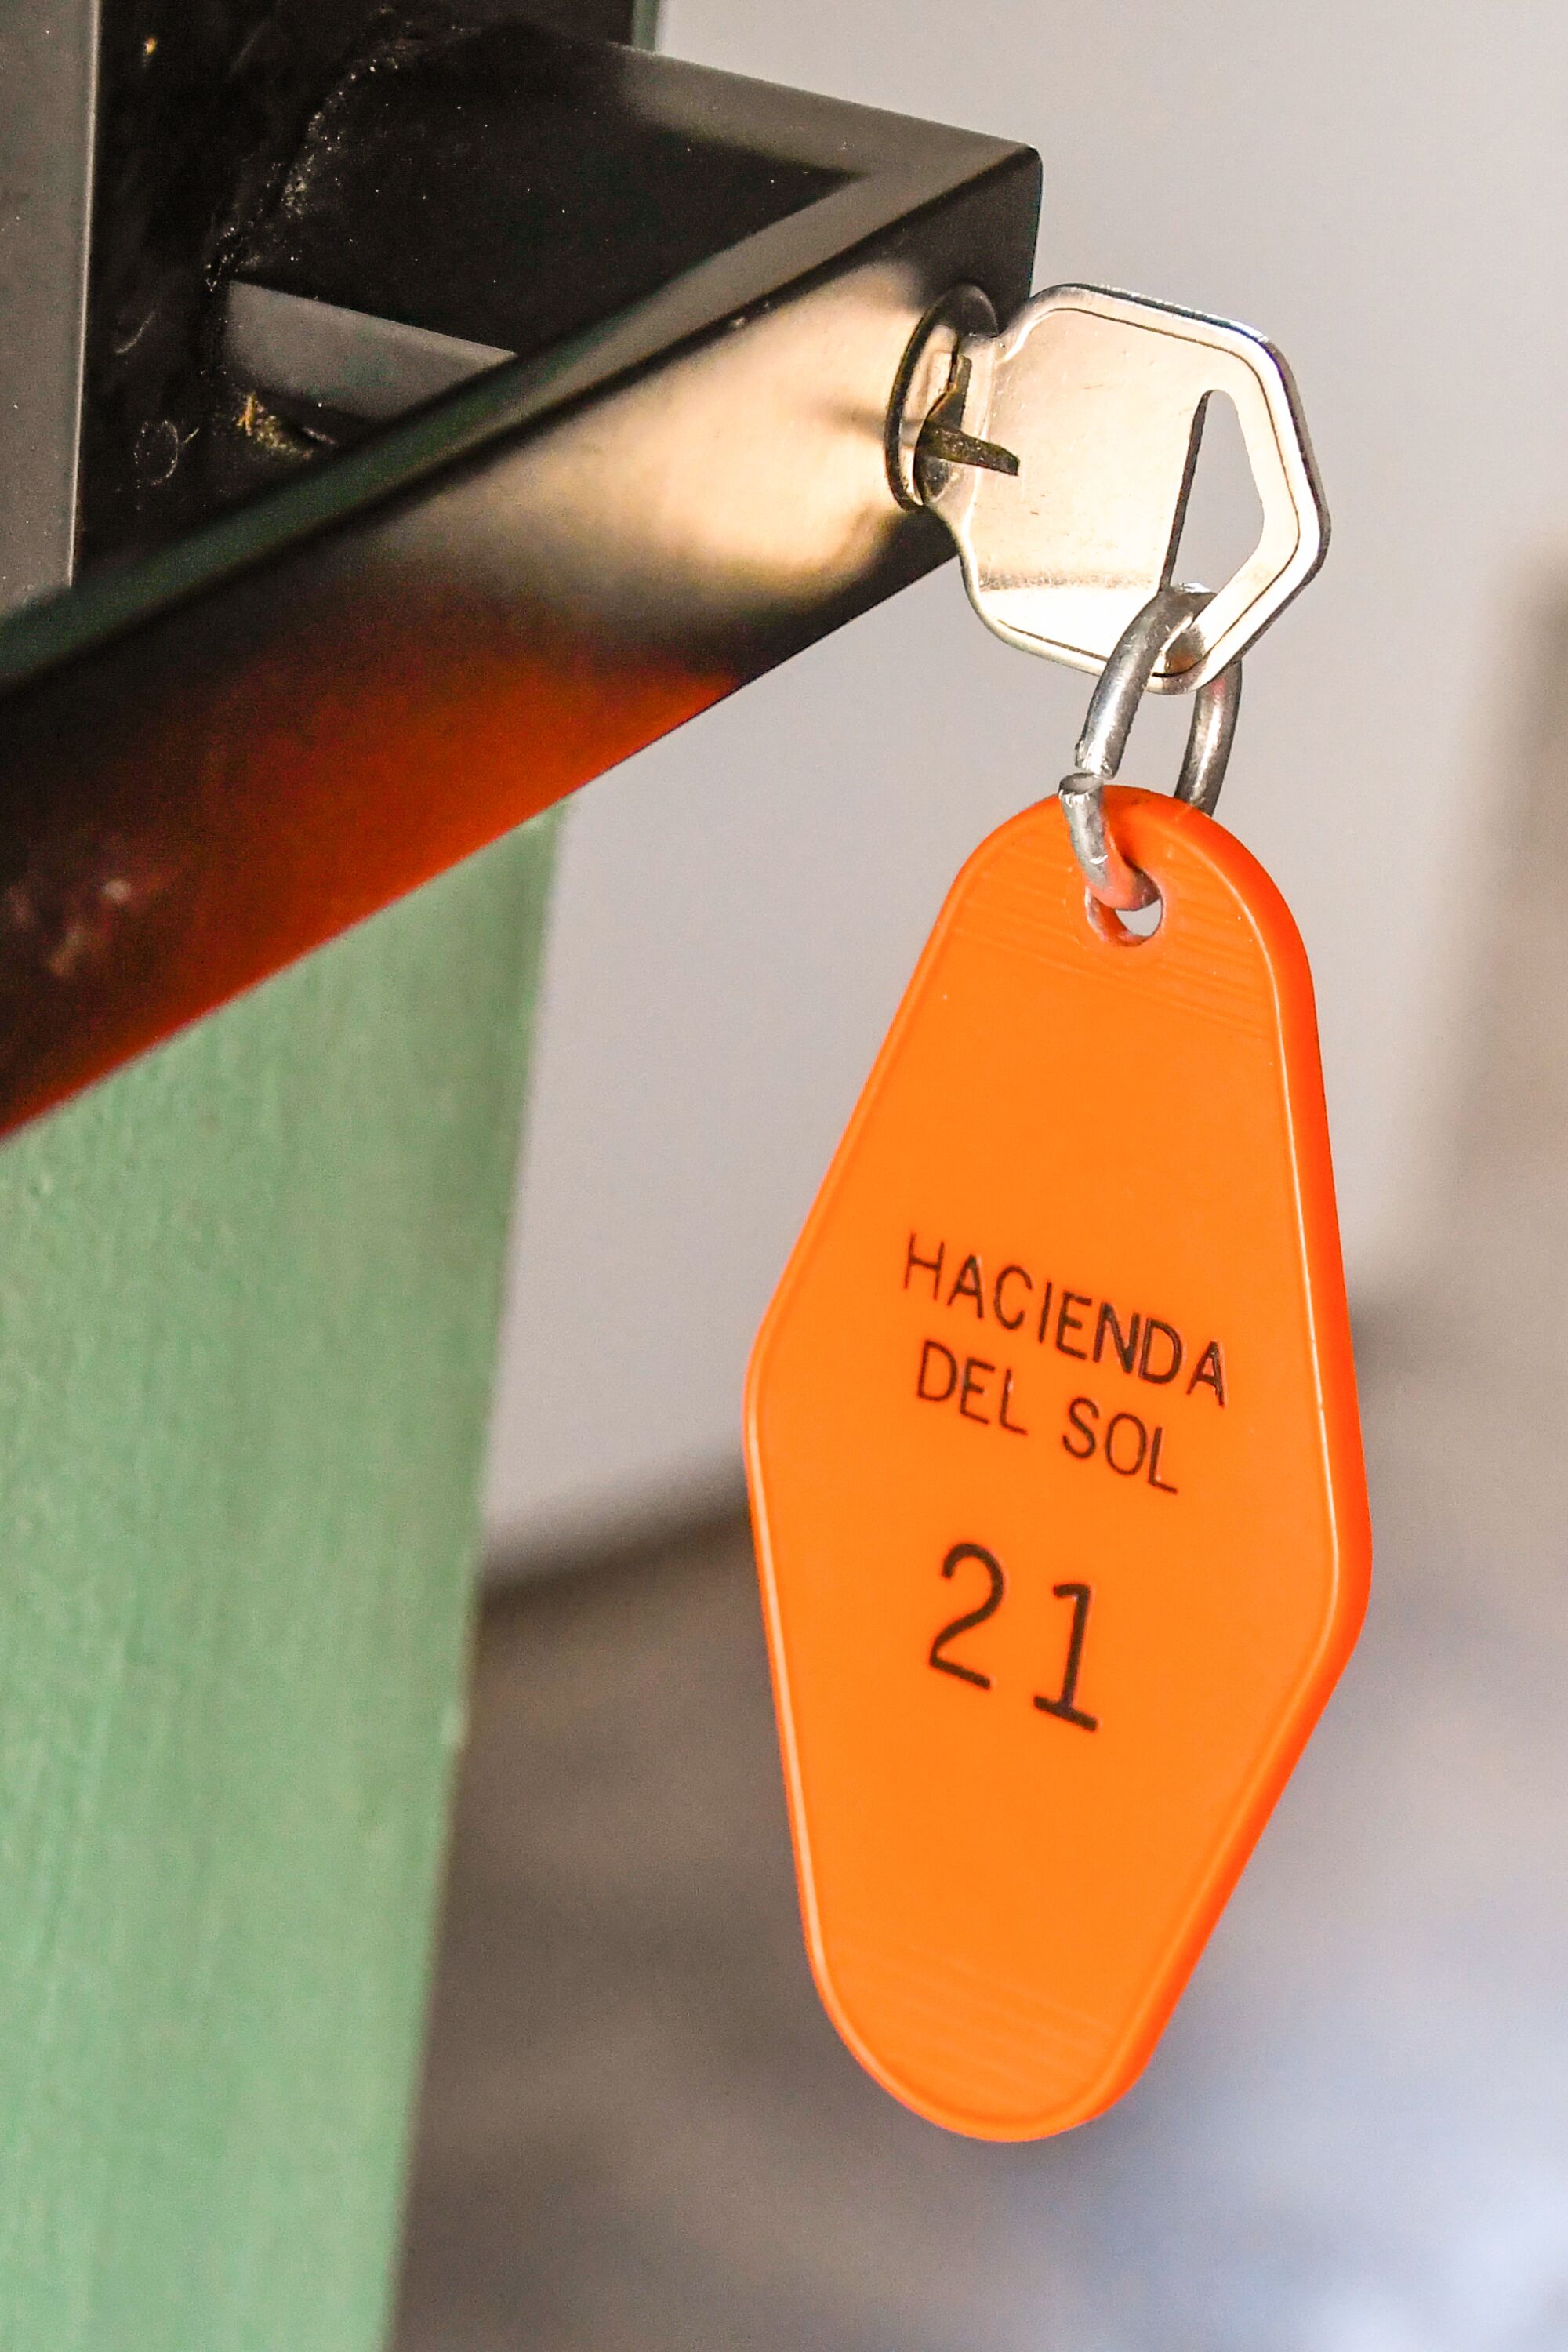 A orange tag on a key in a door handle reads "Hacienda del Sol 21"